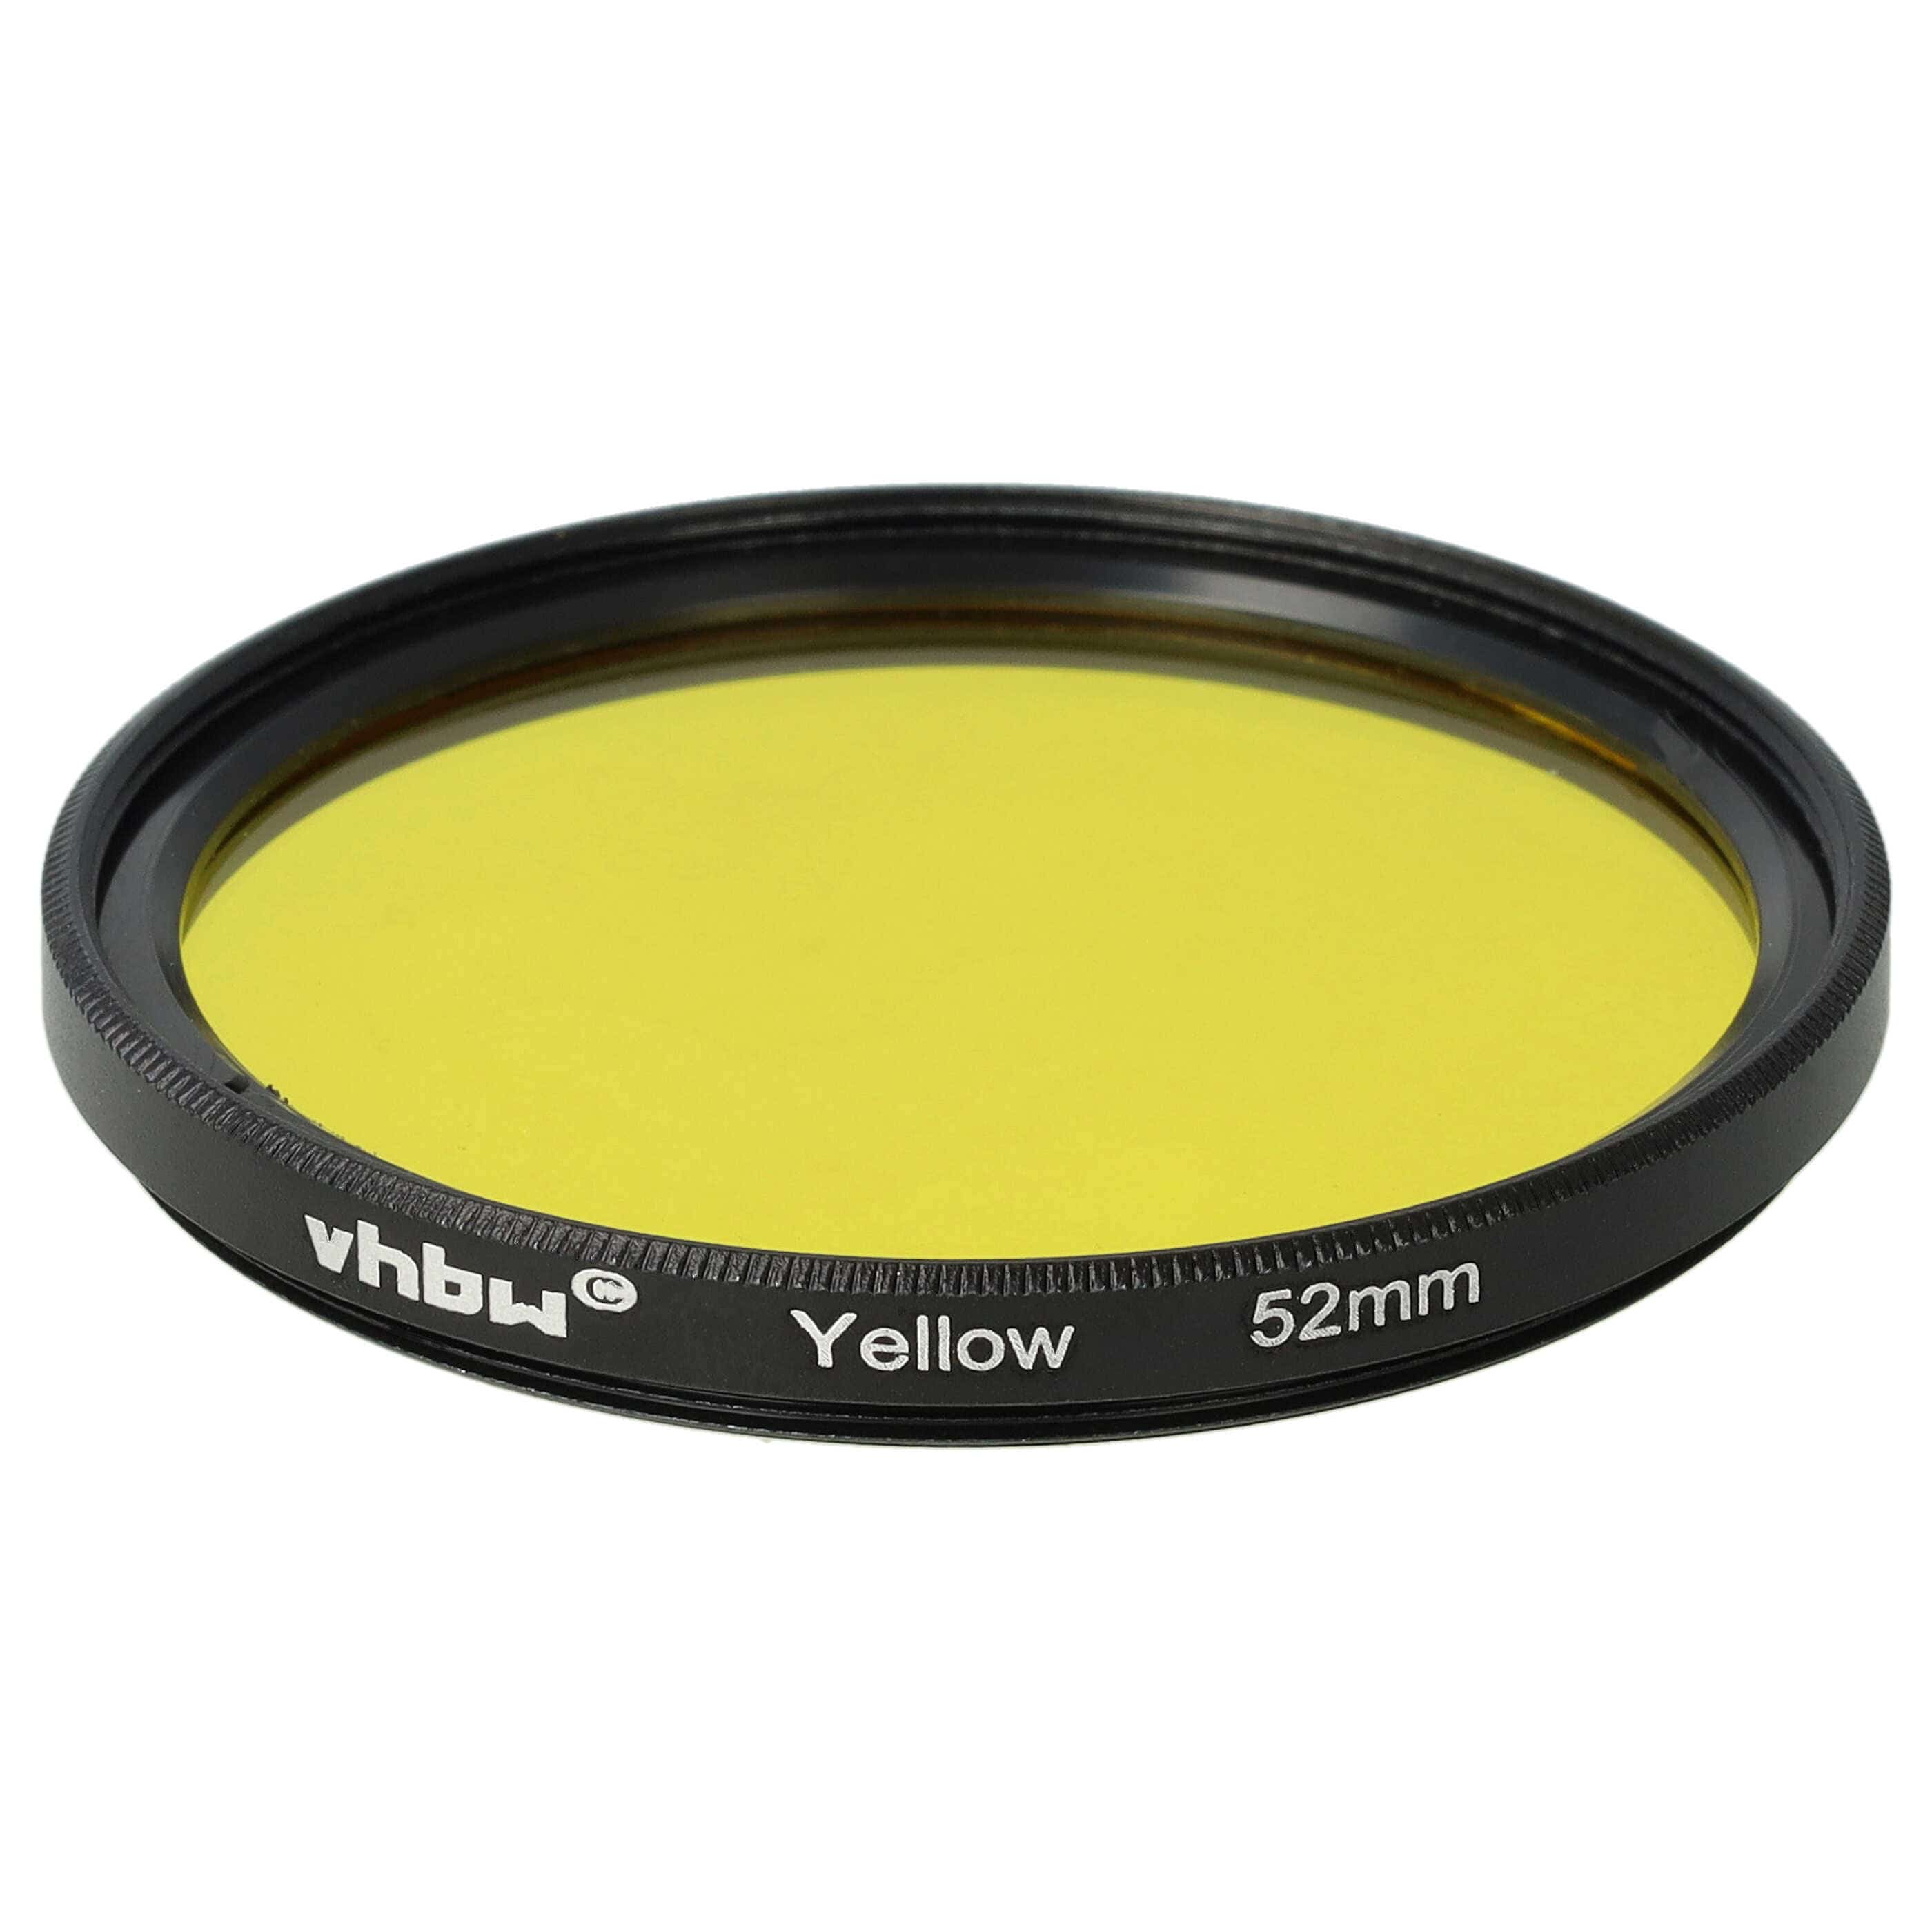 Farbfilter gelb passend für Kamera Objektive mit 52 mm Filtergewinde - Gelbfilter